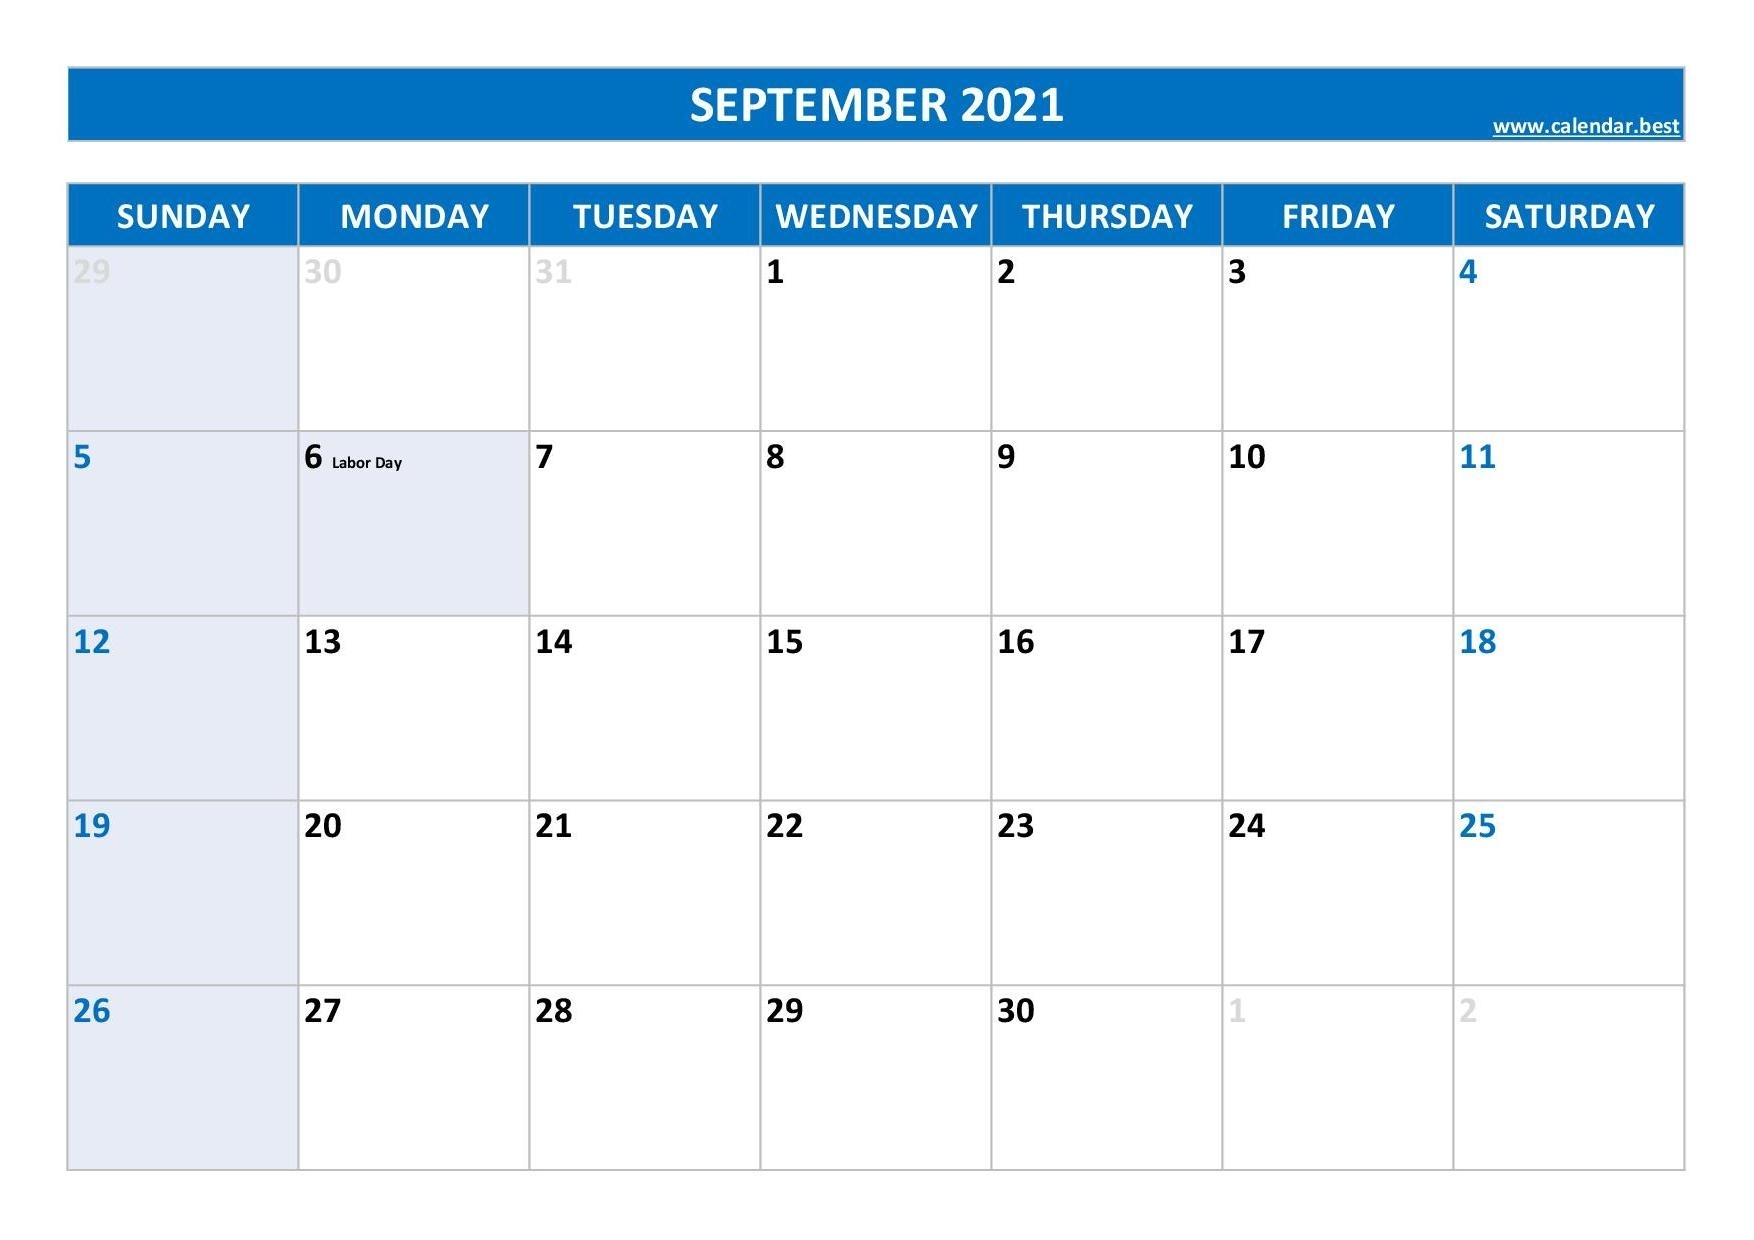 September 2021 Calendar -Calendar.best